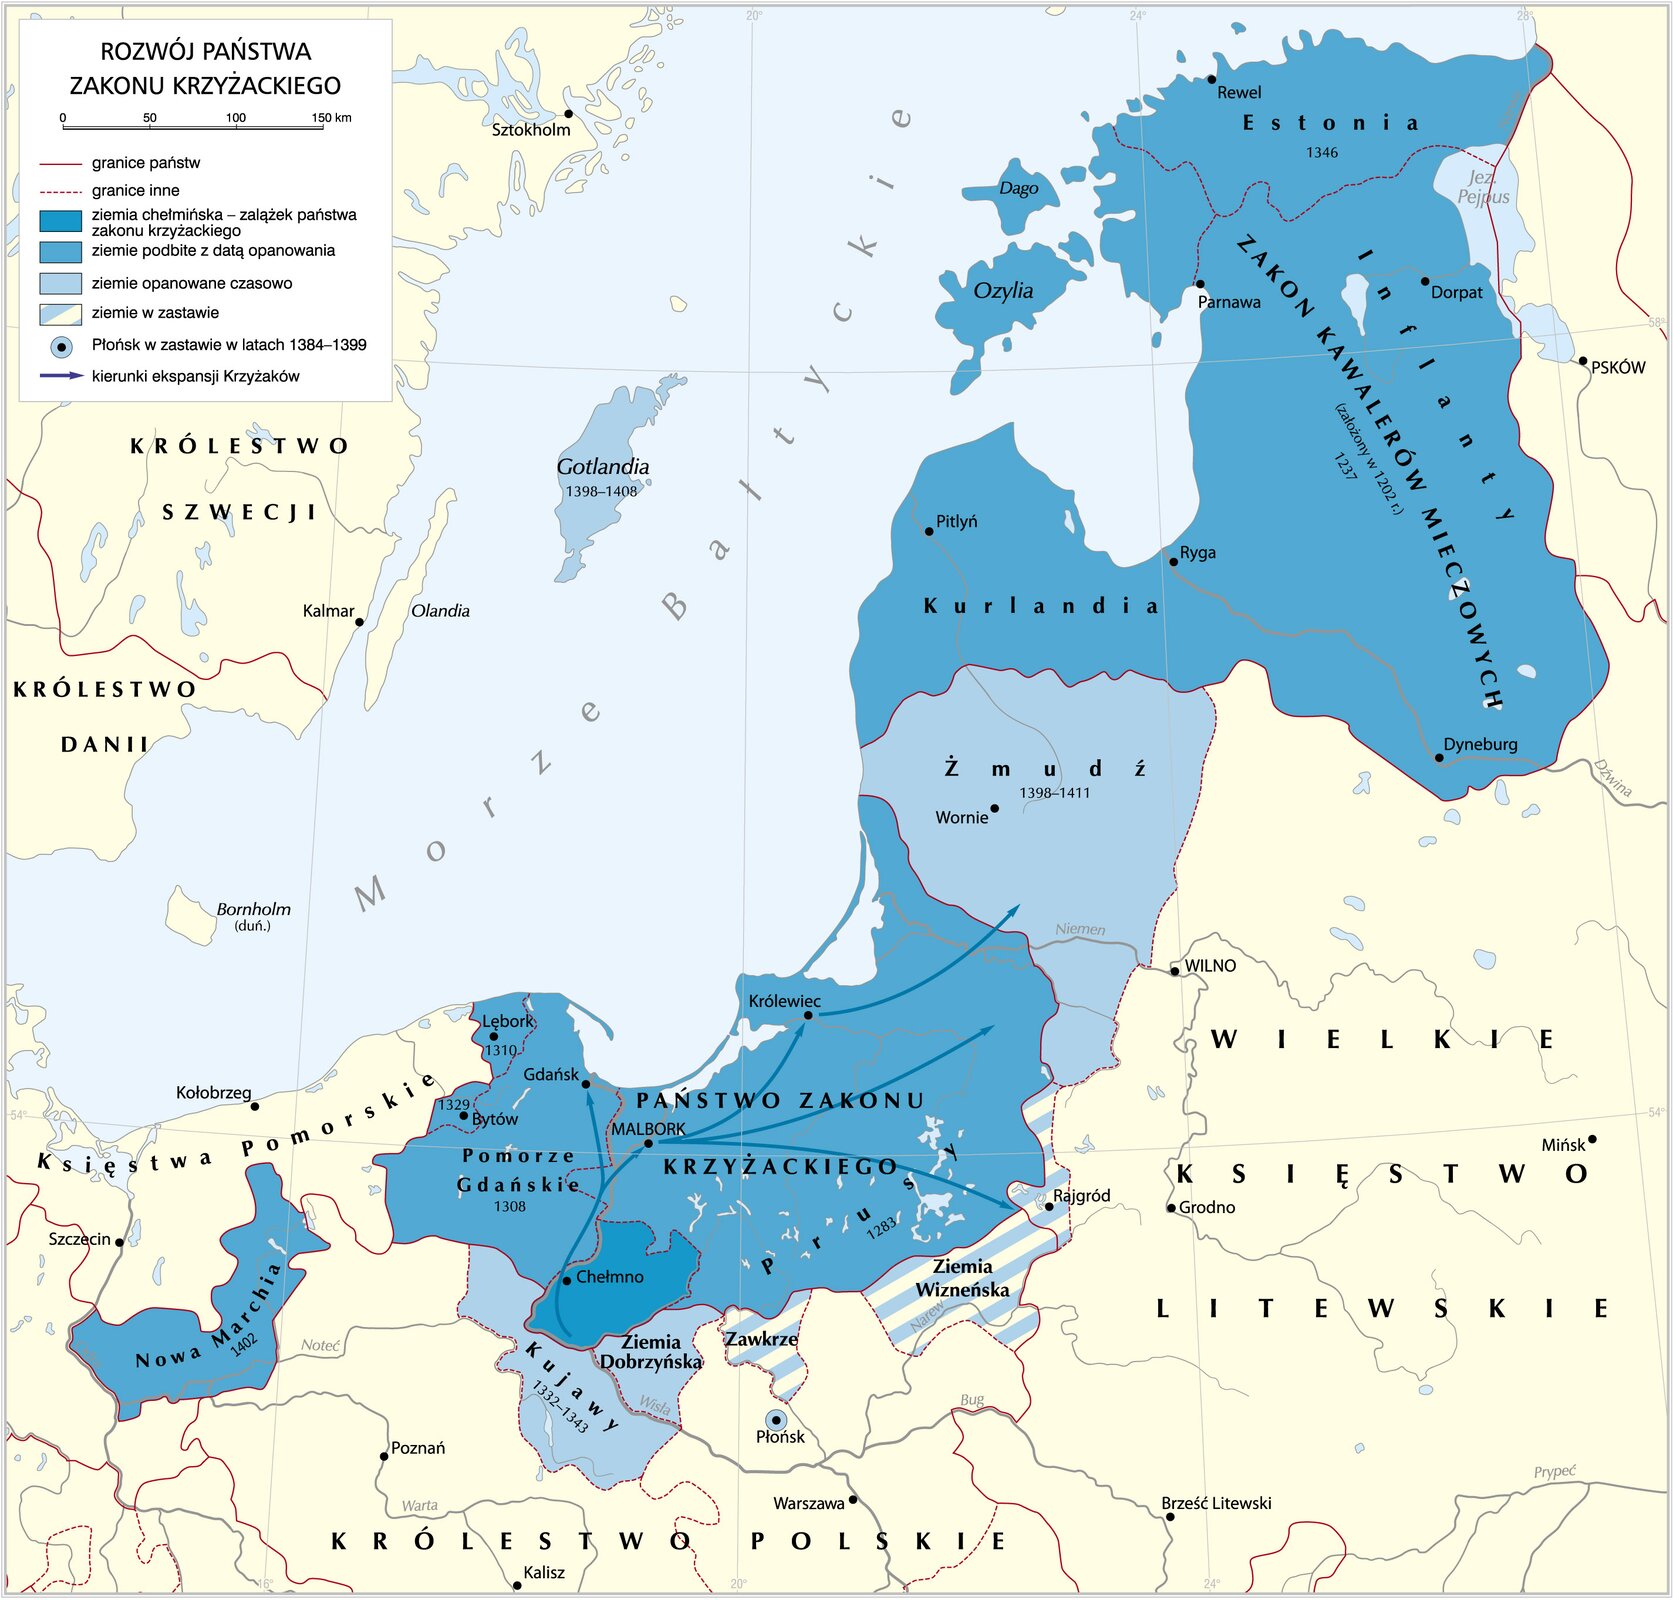 Mapa rozwój państwa zakonu krzyżackiego. Zawiera informacje o ziemiach w granicach państwa zakonu krzyżackiego.